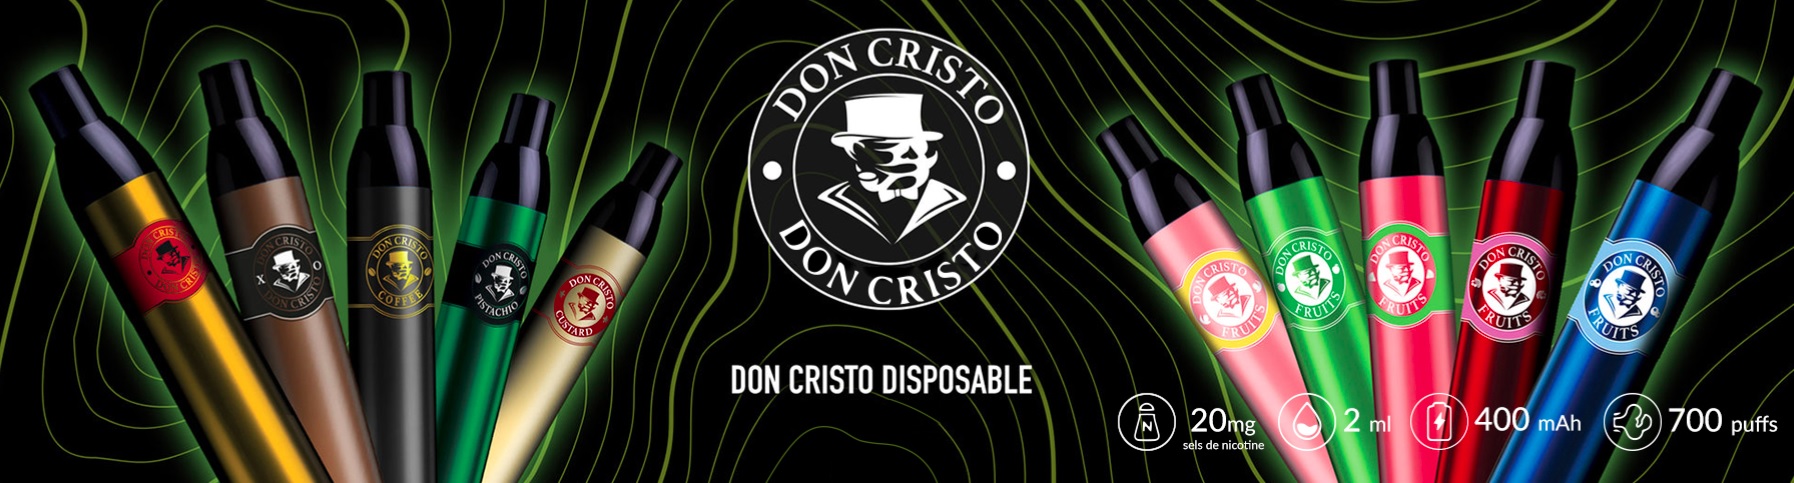 don cristo disposable banner